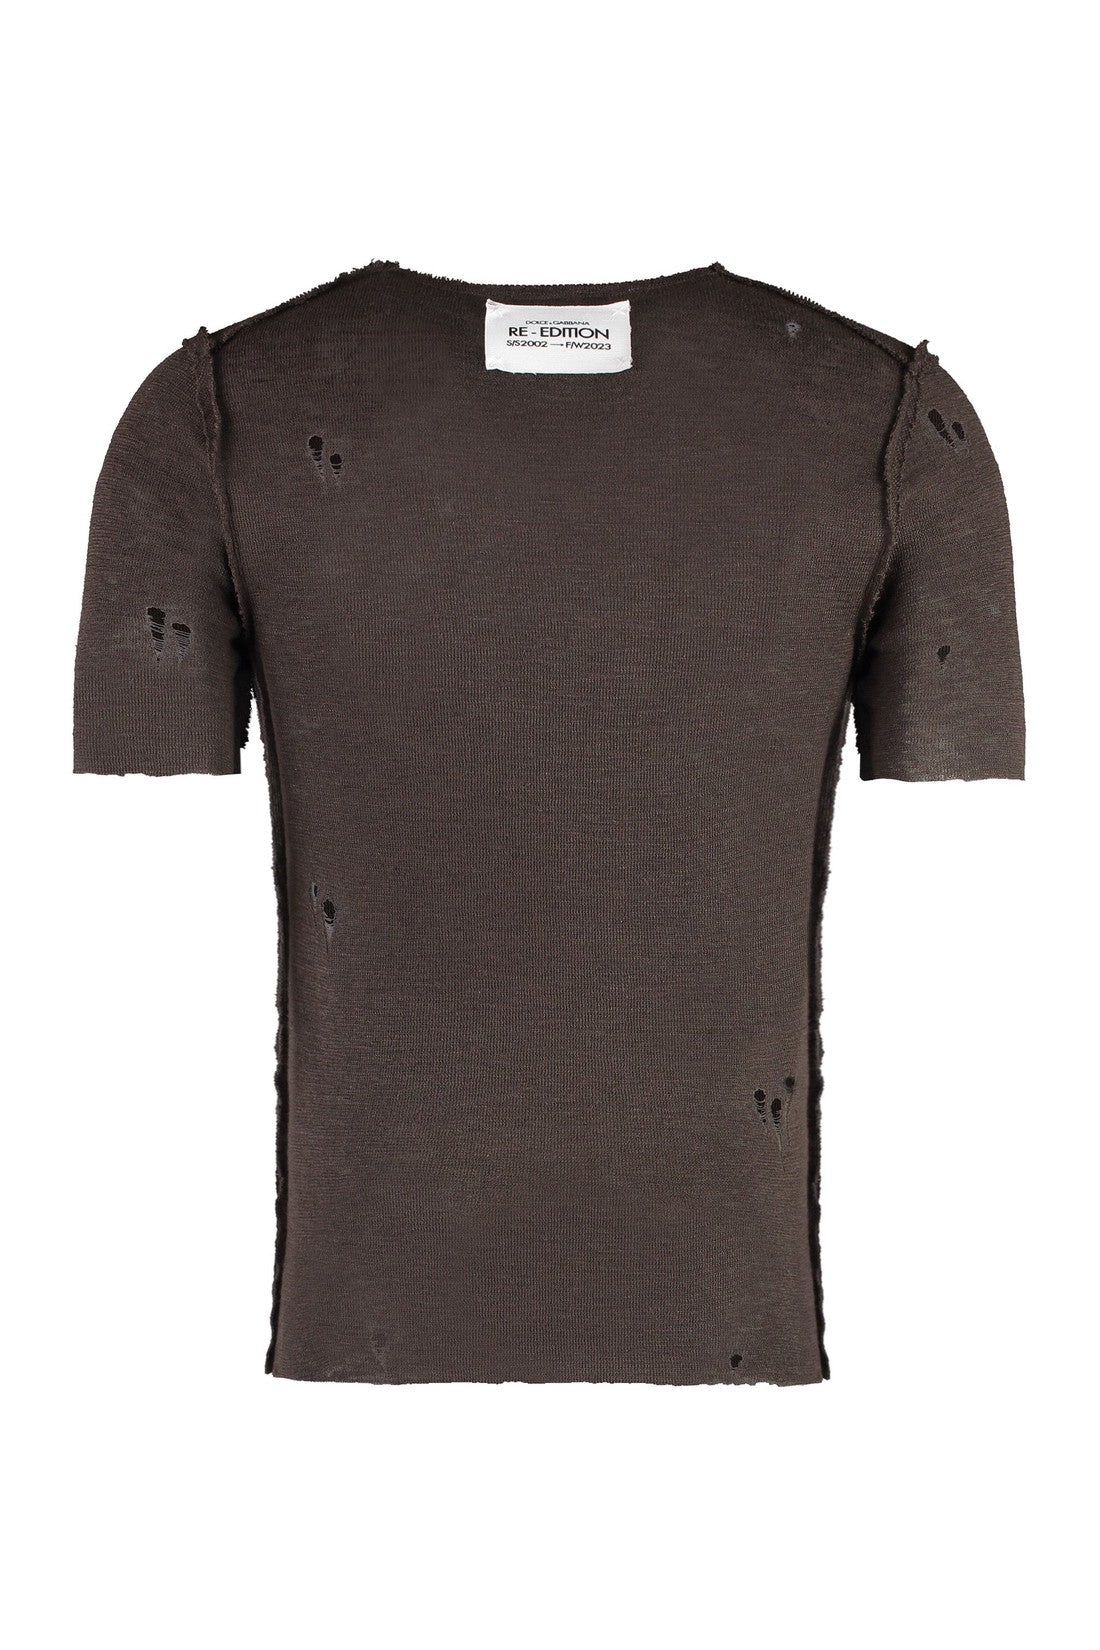 Dolce & Gabbana-OUTLET-SALE-Worn-out details knit t-shirt-ARCHIVIST